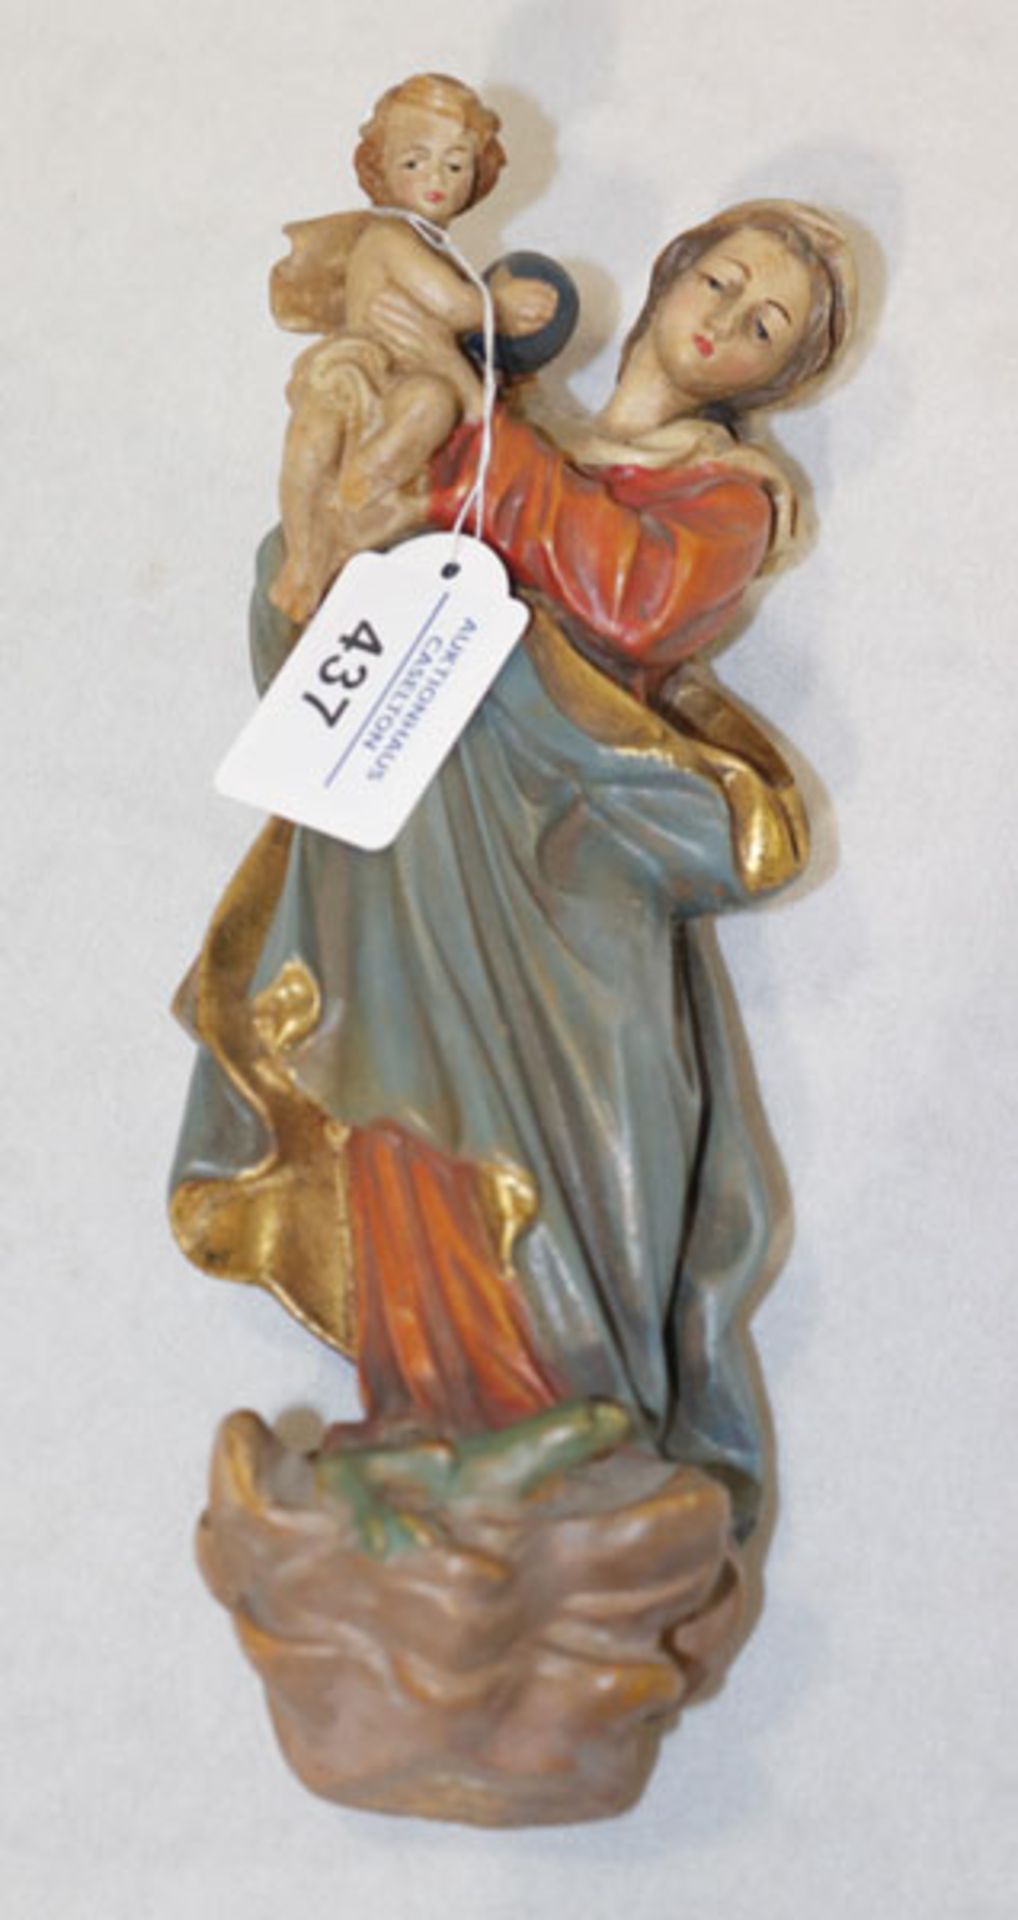 Figurenskulptur 'Maria mit Kind', farbig gefaßt, H 24 cm